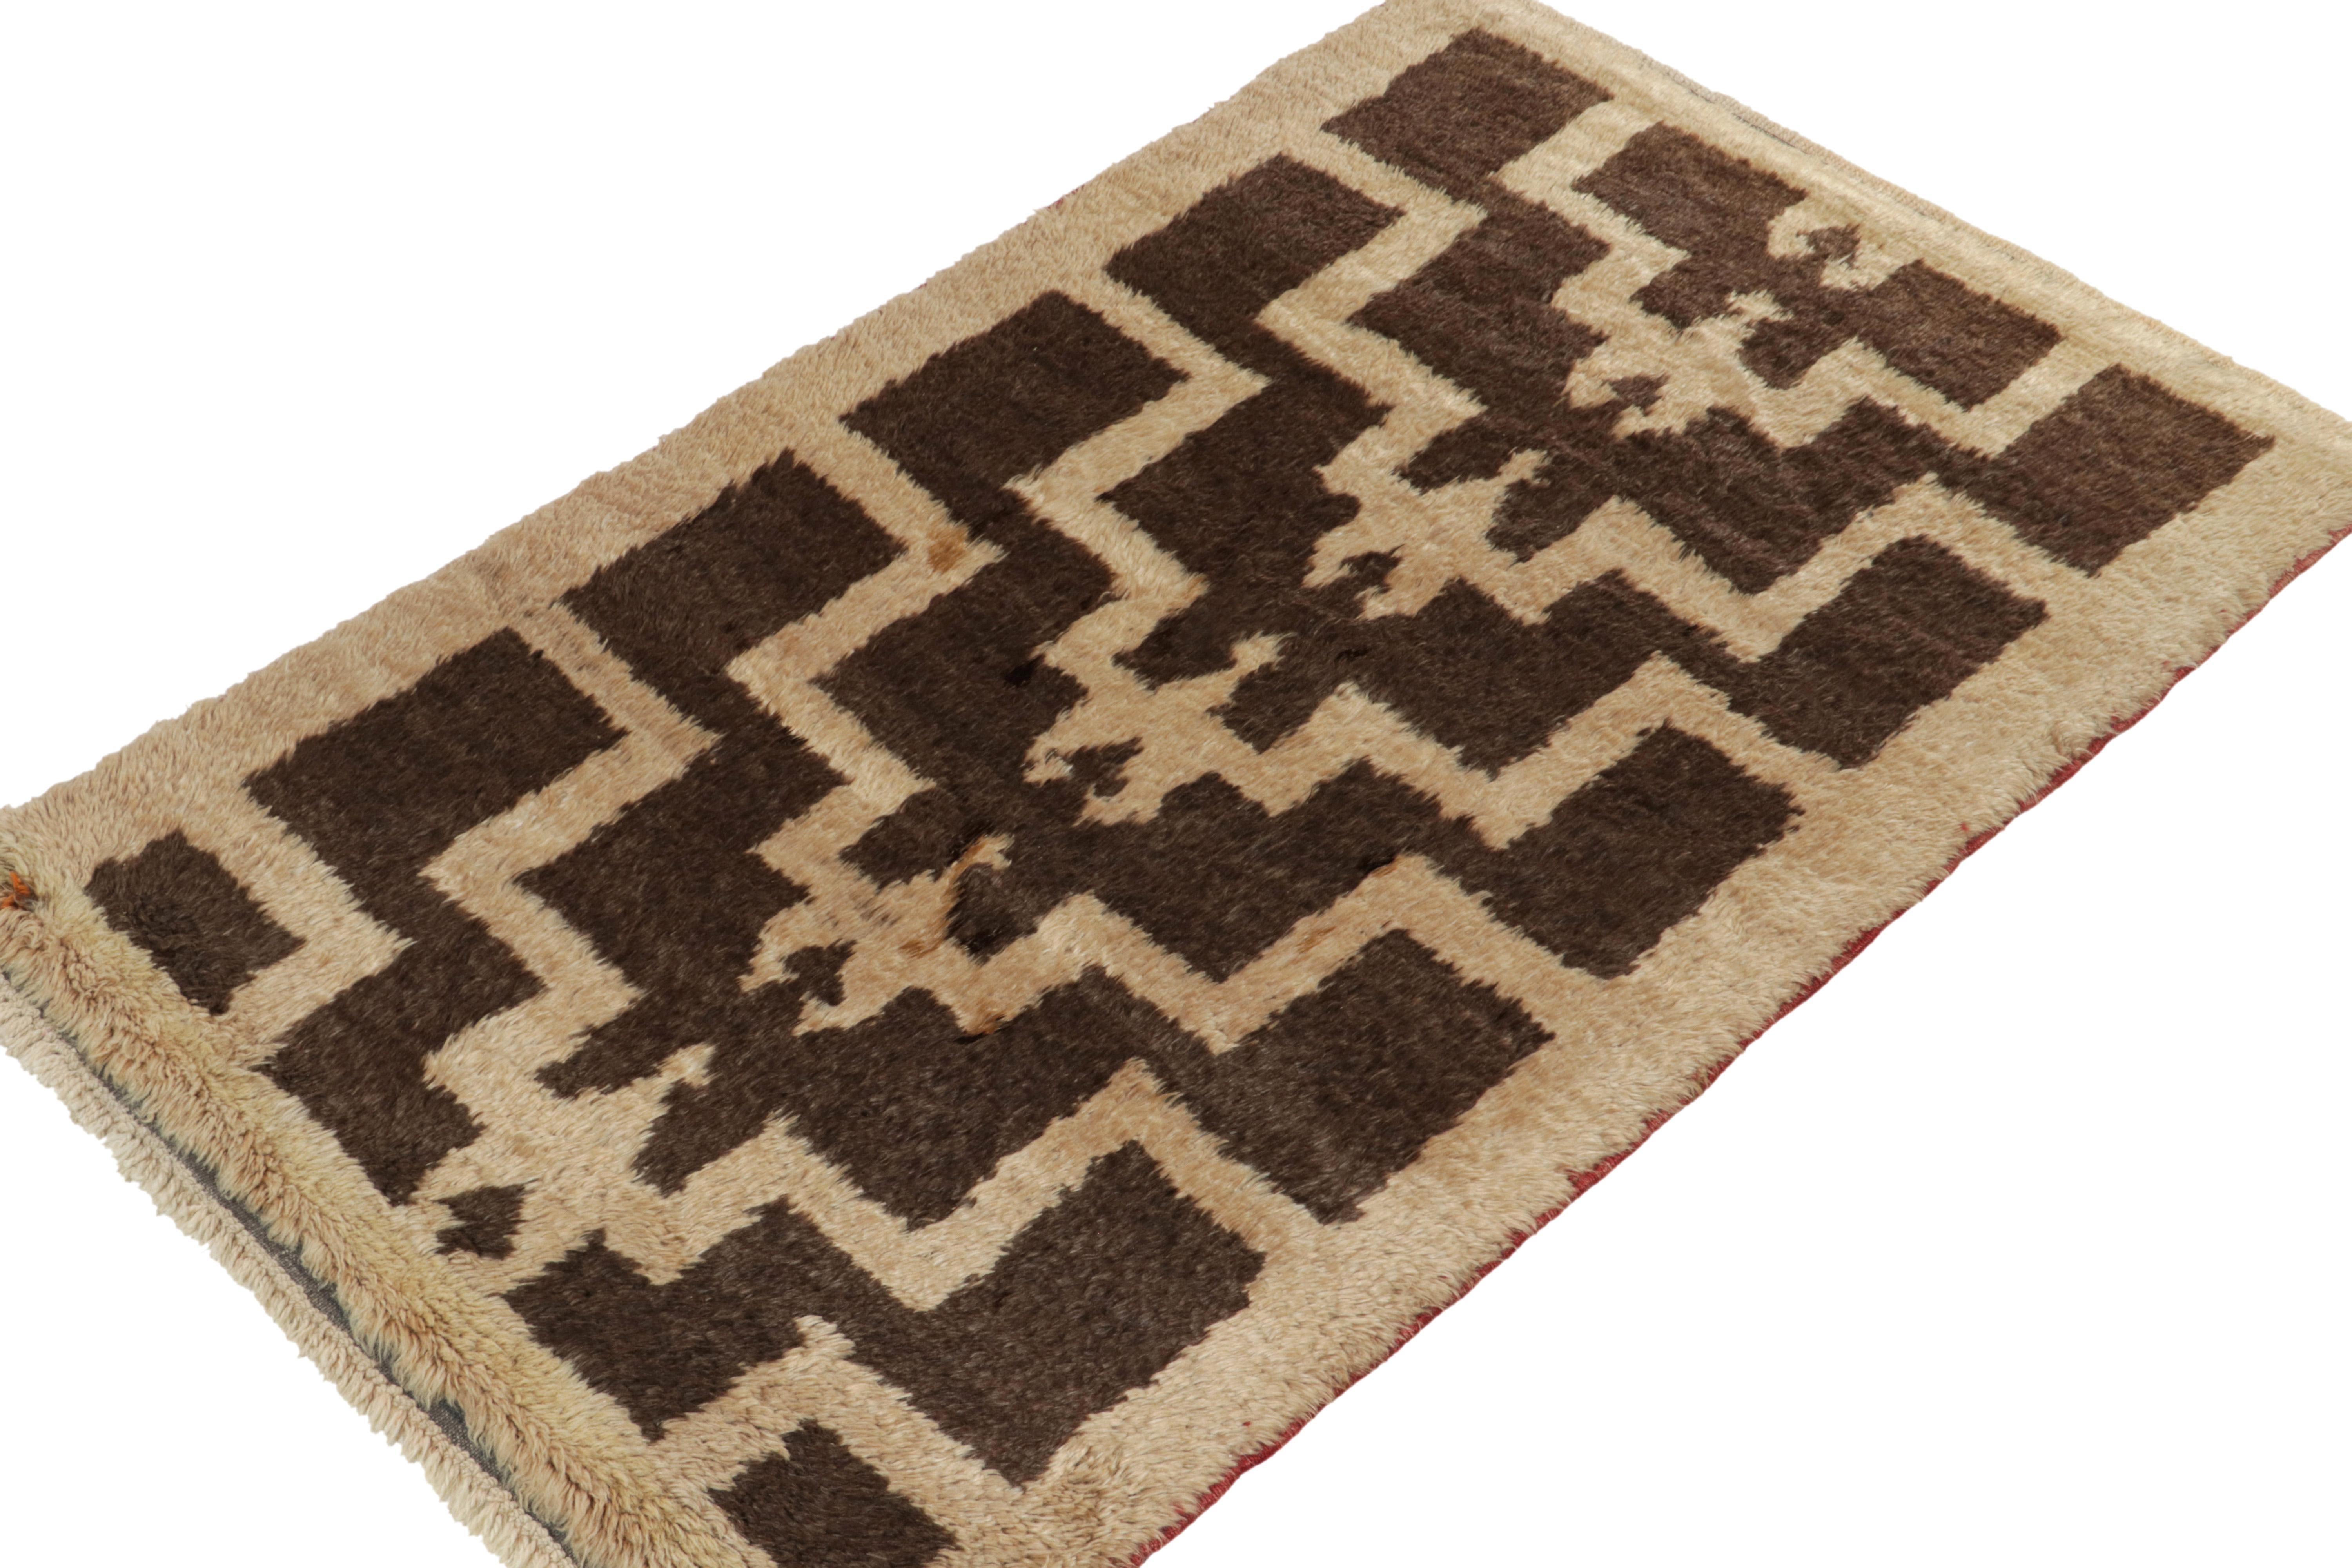 Turkish 1950s Vintage Tulu Tribal Rug in Brown & Beige Geometric Pattern by Rug & Kilim For Sale